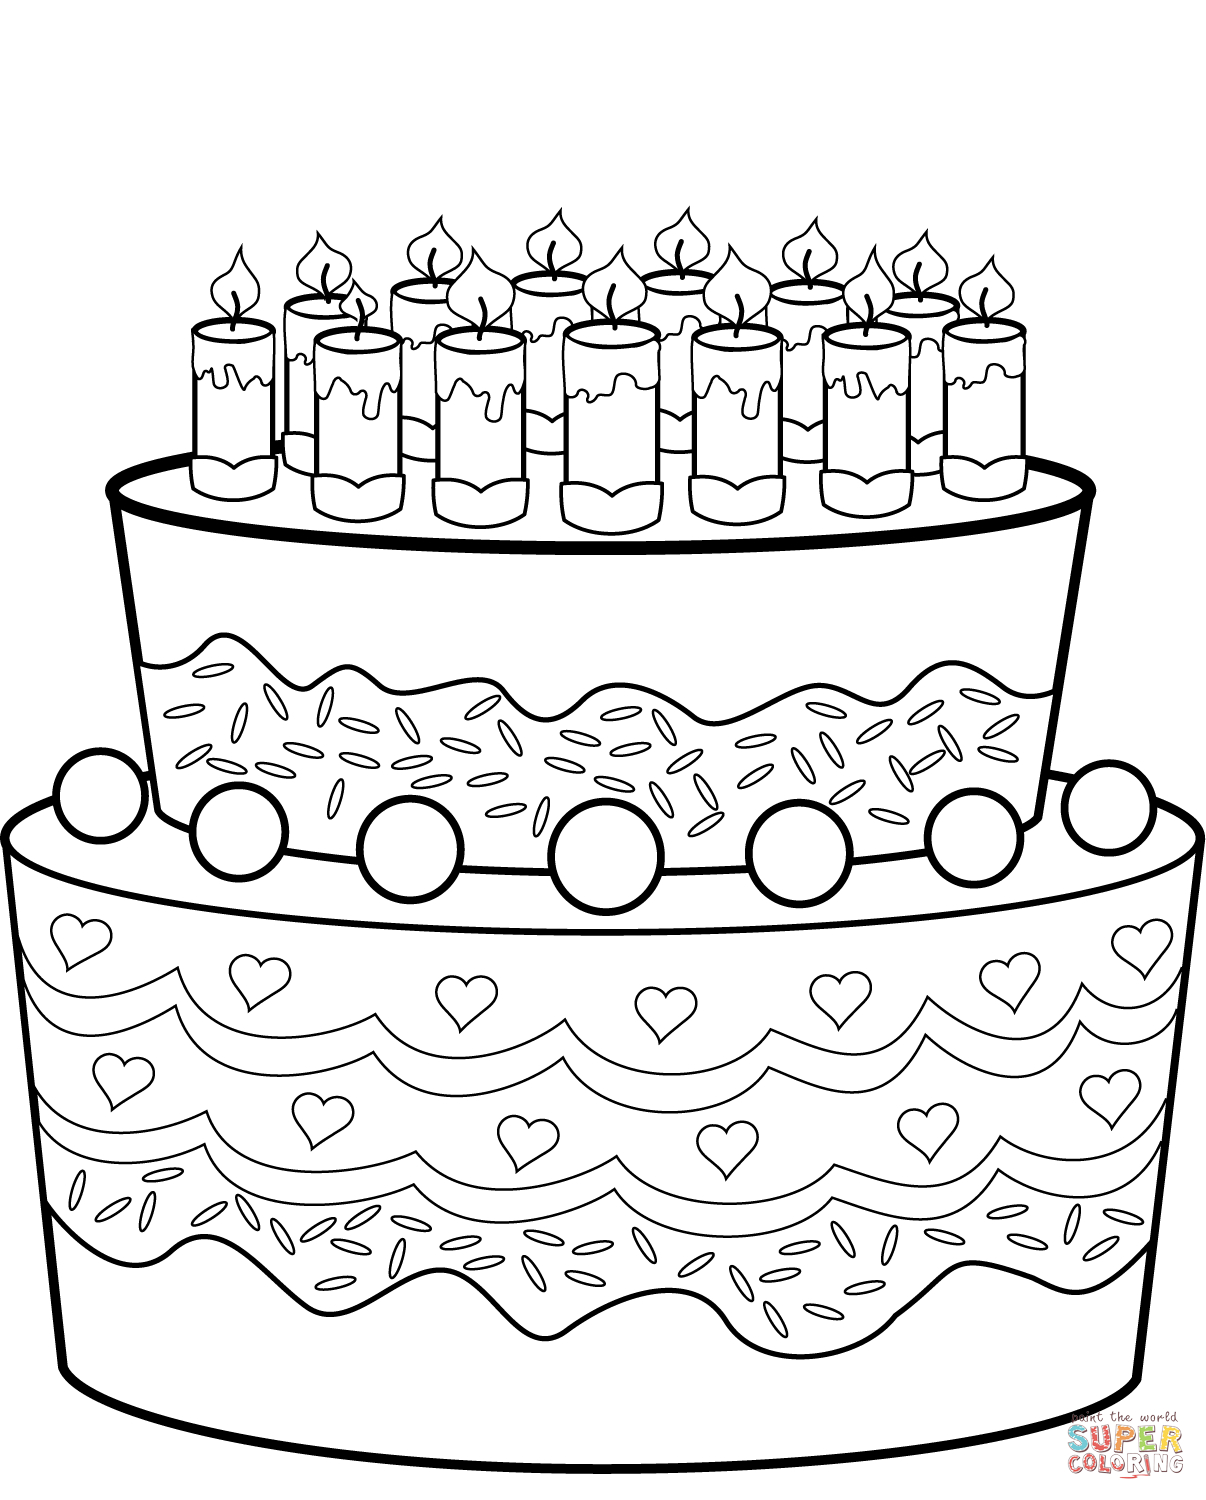 Ausmalbild: Geburtstagskuchen | Ausmalbilder Kostenlos Zum für Malvorlage Geburtstagskuchen